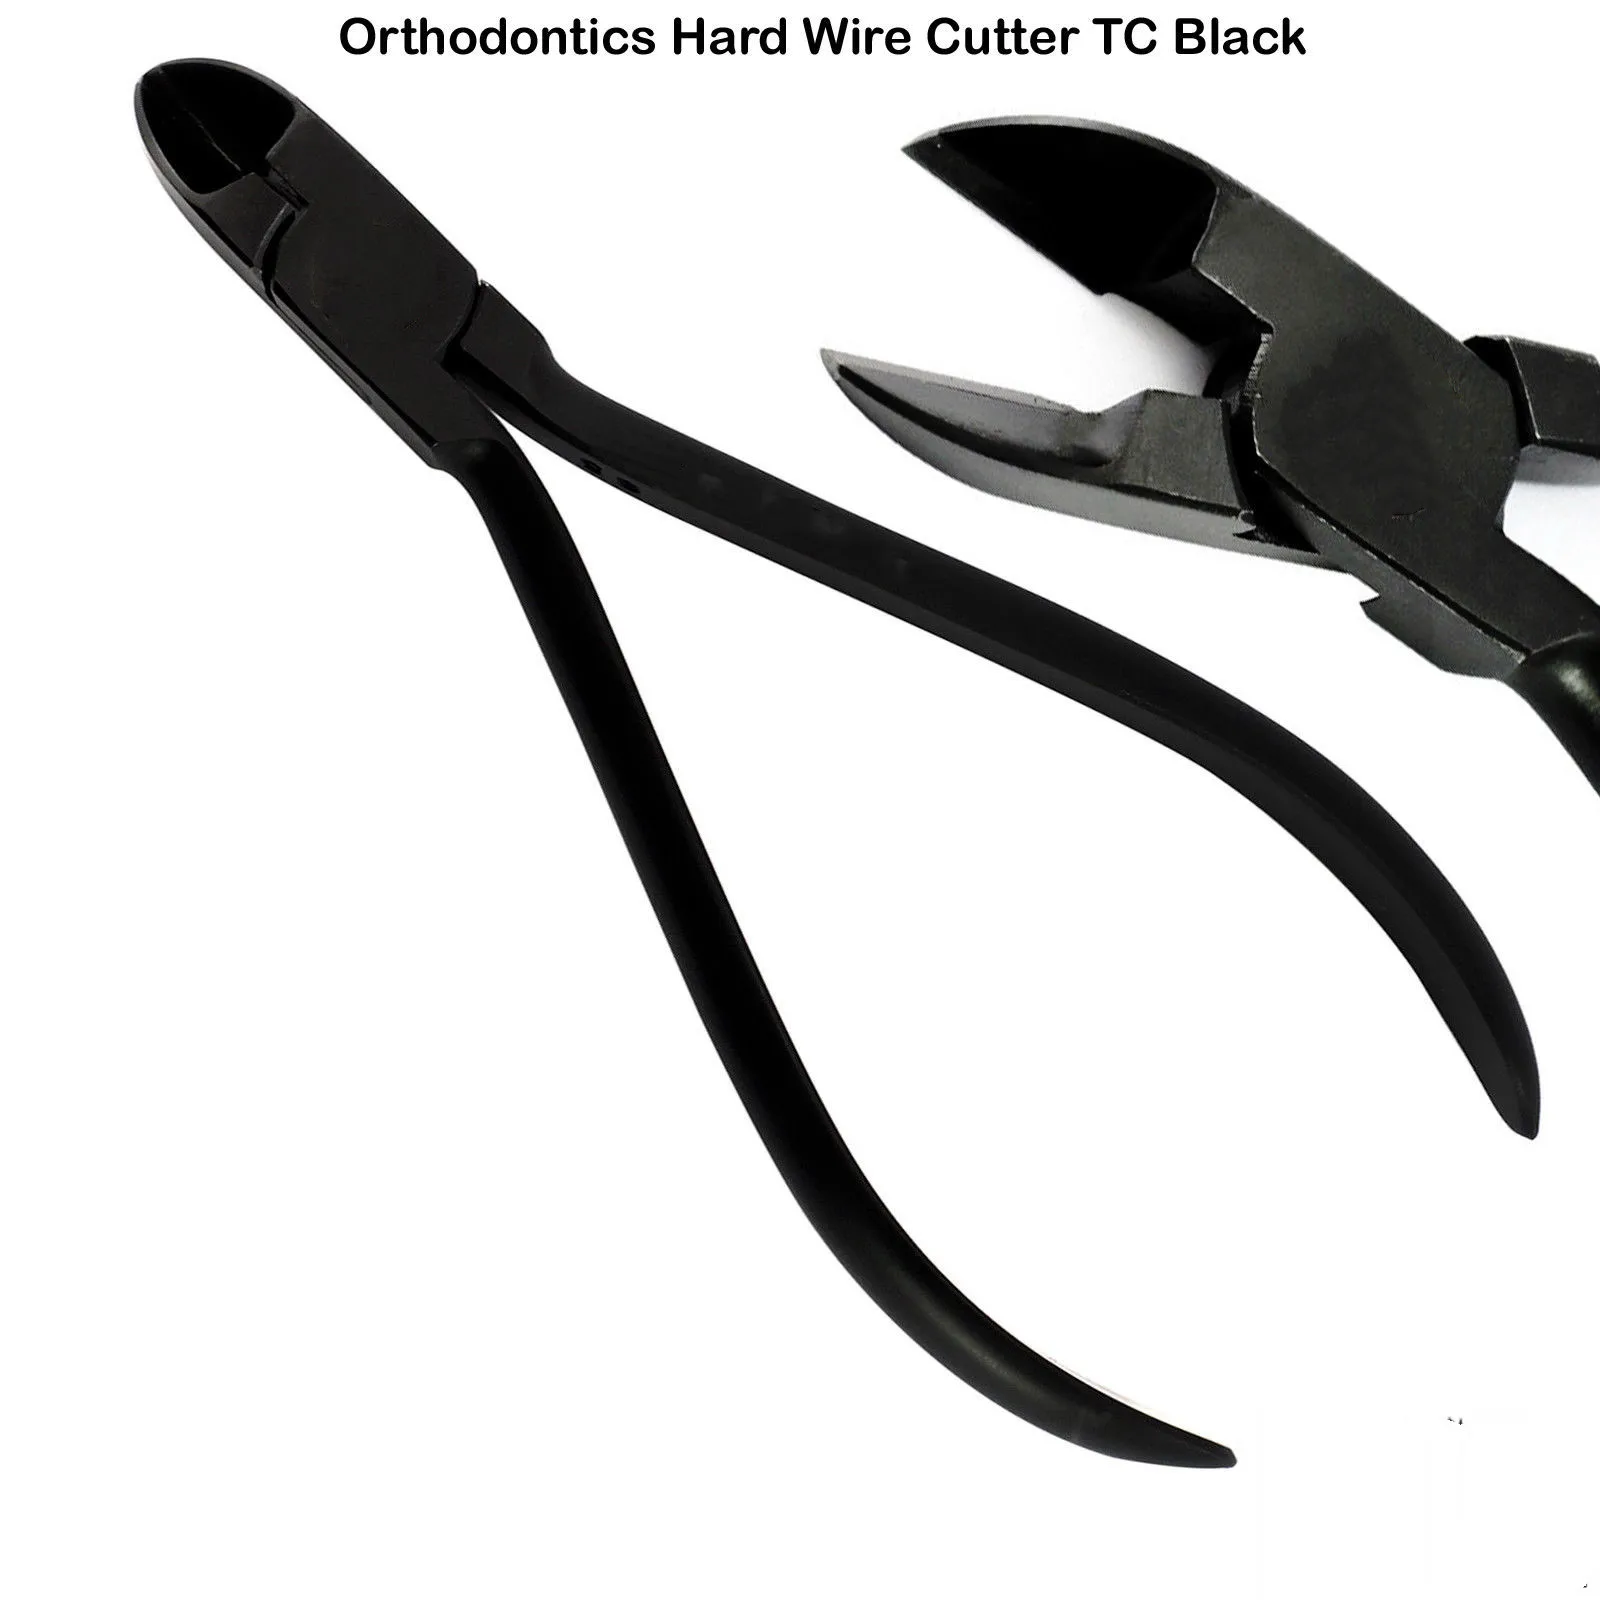 Pasador de alambre duro y cortadores de ligadura, alicates dentales de laboratorio de ortodoncia Distal TC, color negro, 1 pieza